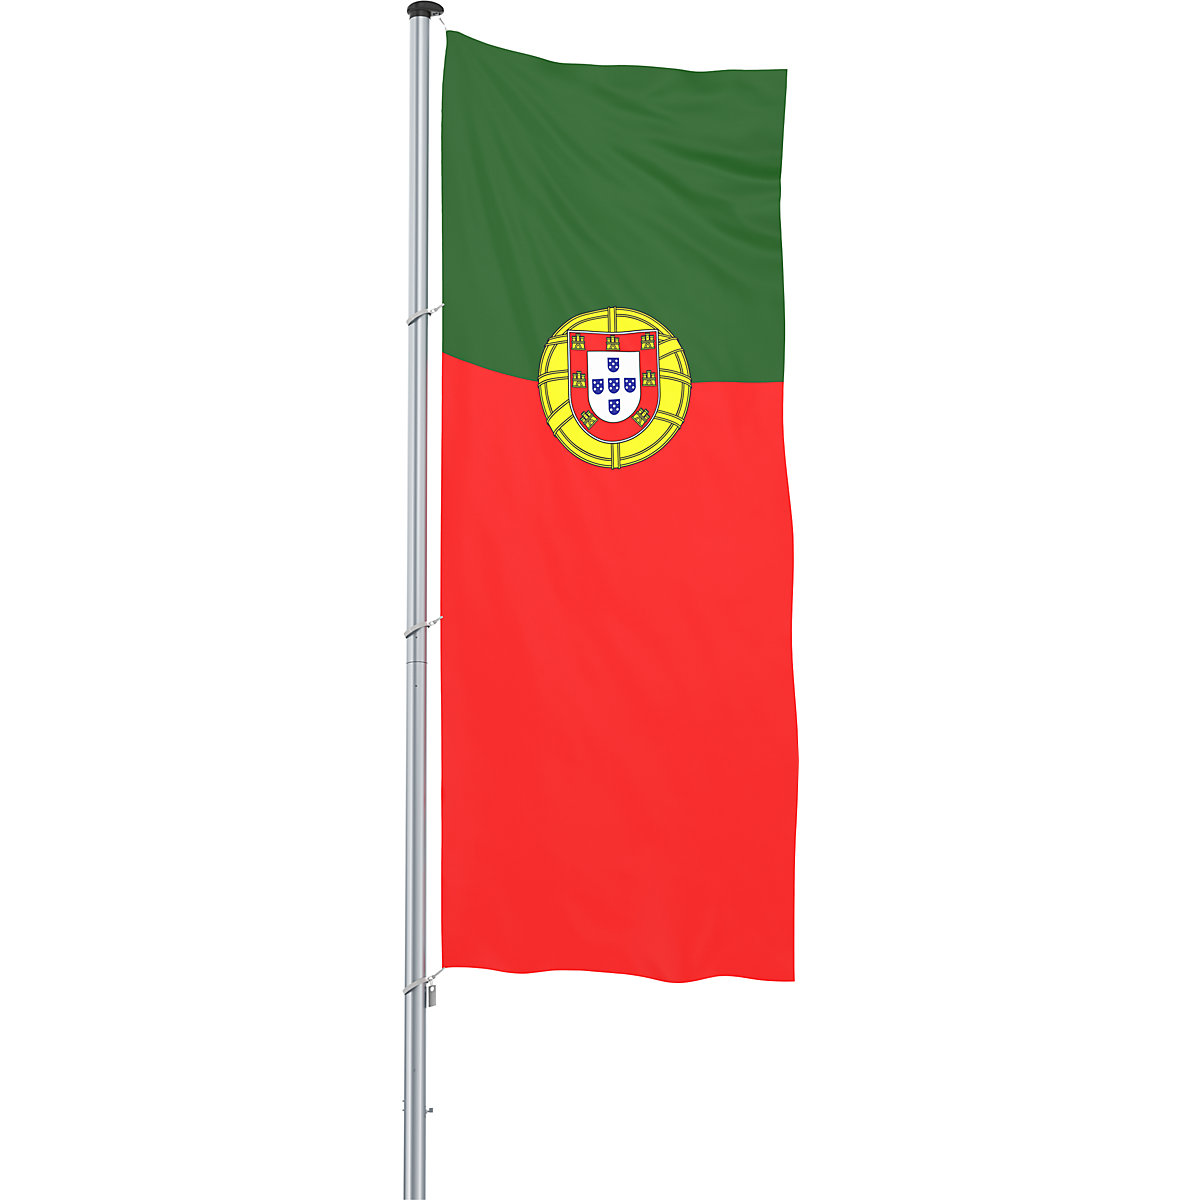 Hijsvlag/landvlag – Mannus, formaat 1,2 x 3 m, Portugal-30